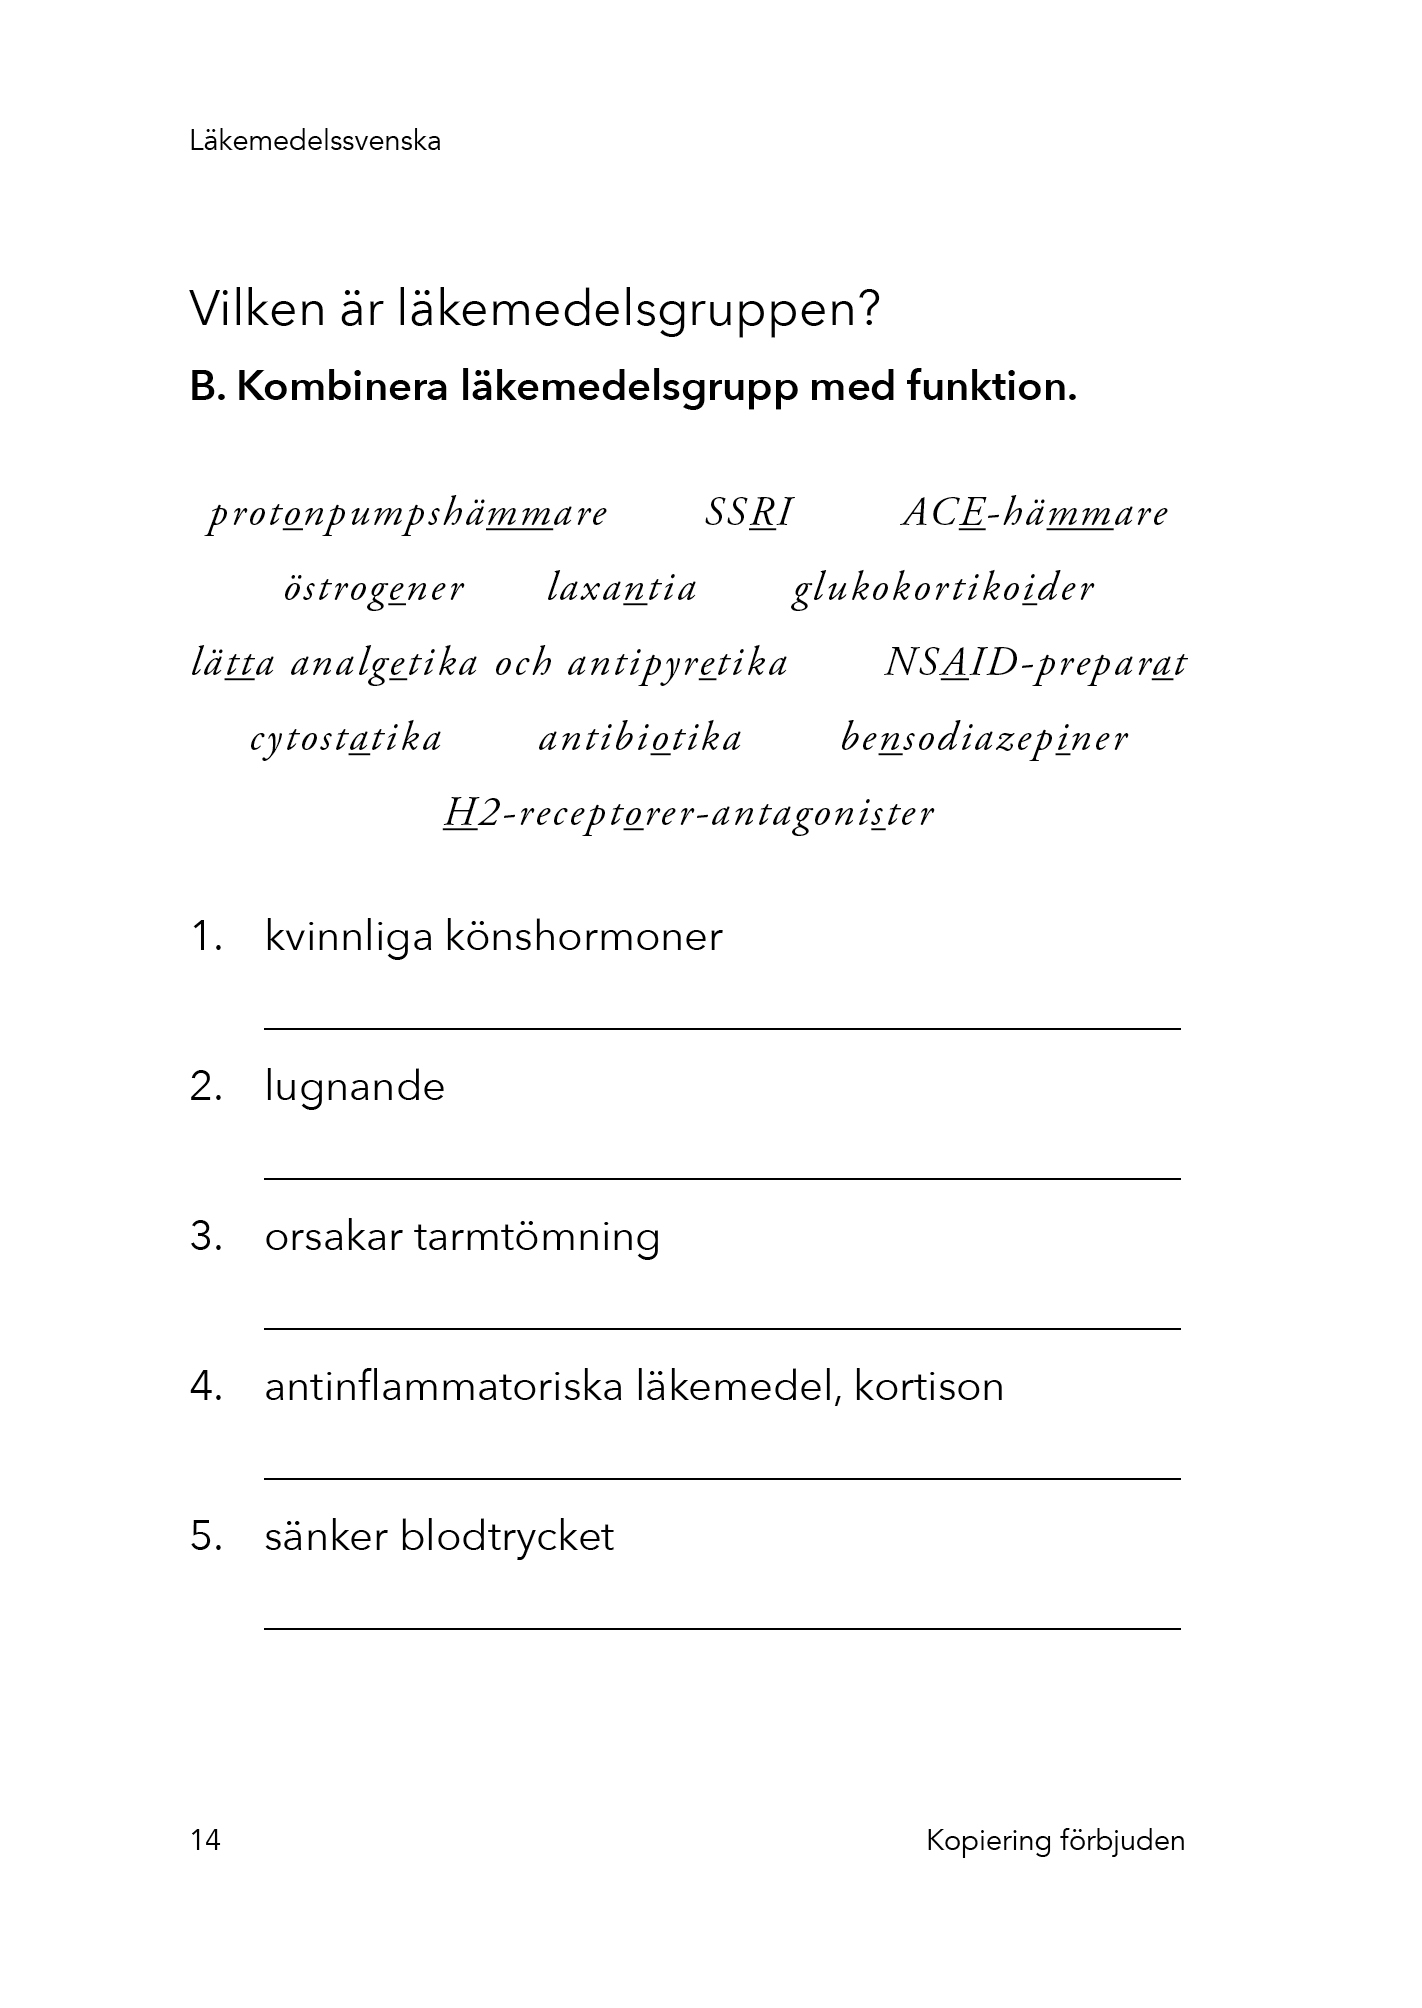 Exempelbild Sjukdomssvenska